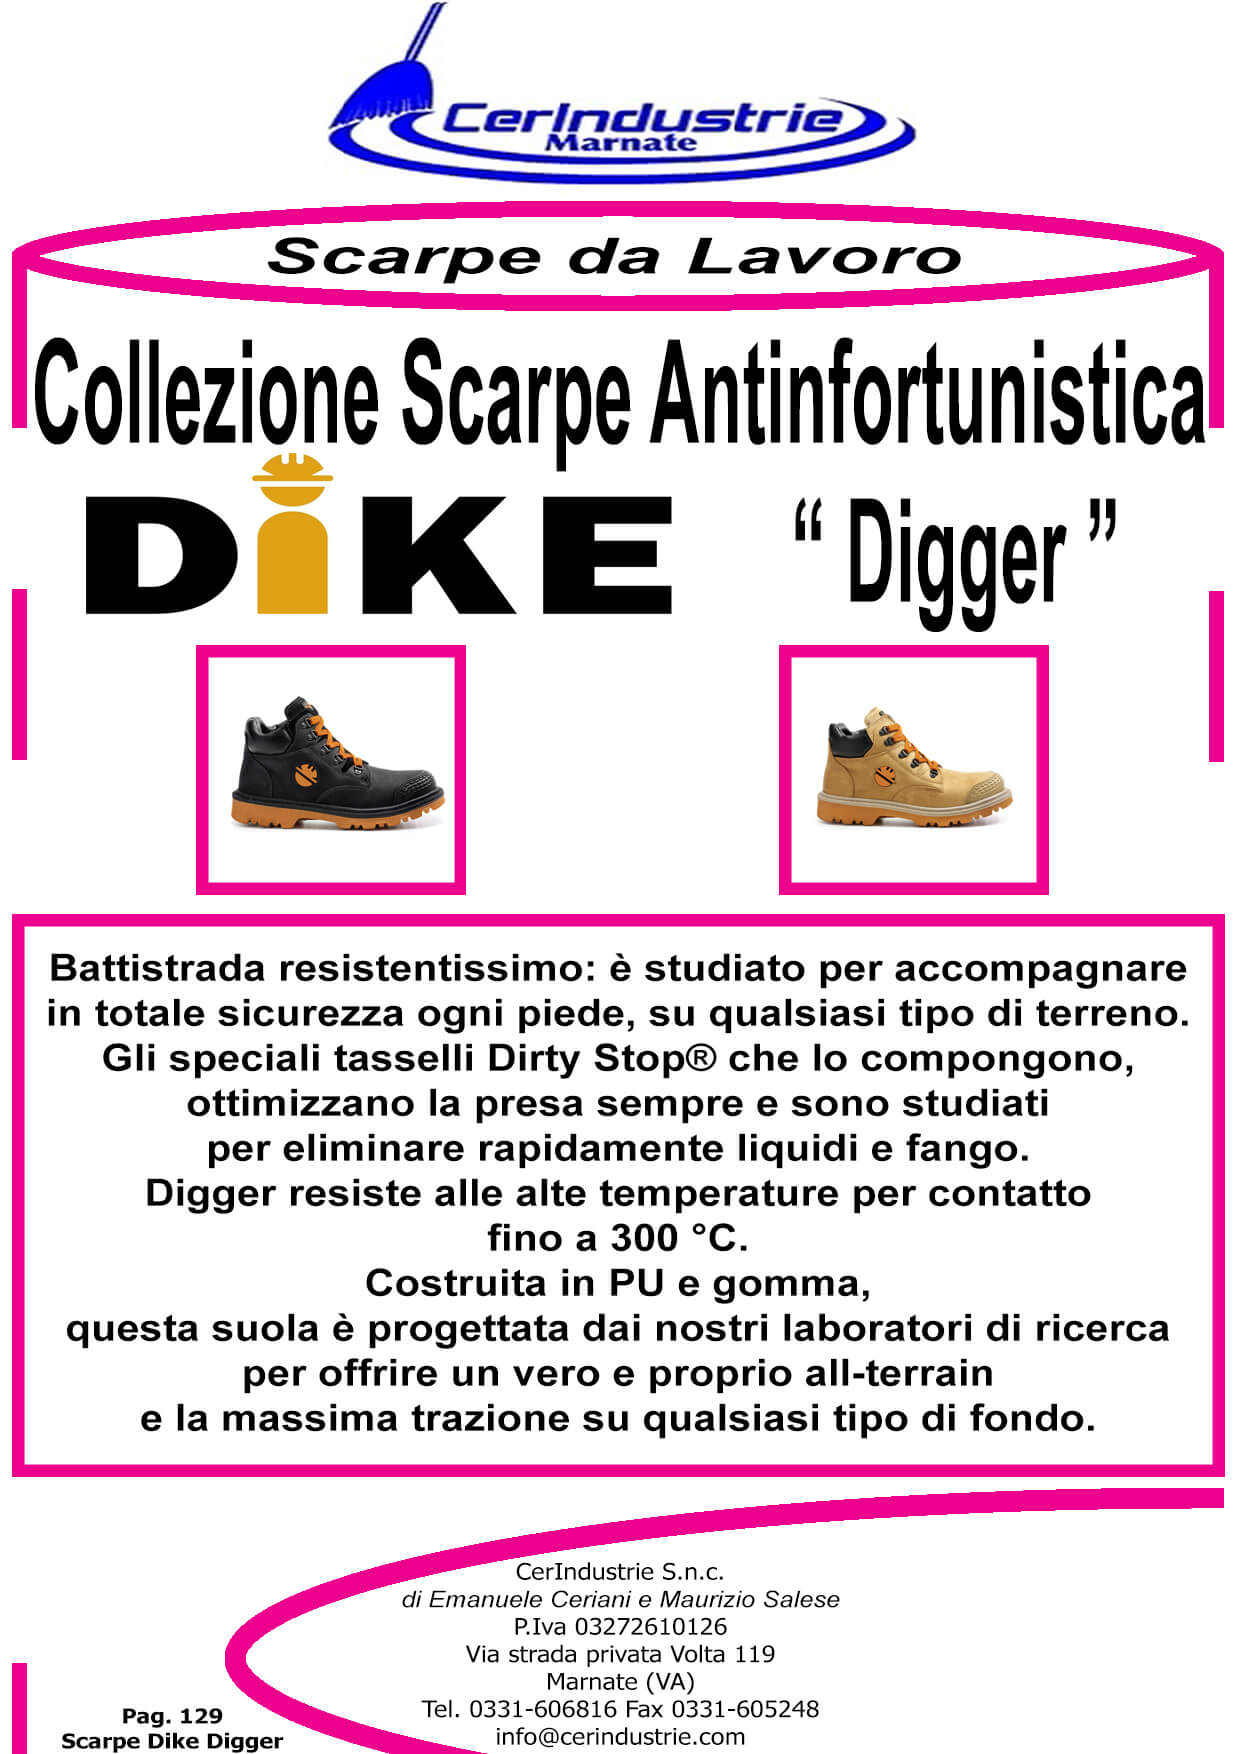 Collezione Scarpe Antinfortunistica Dike Digger